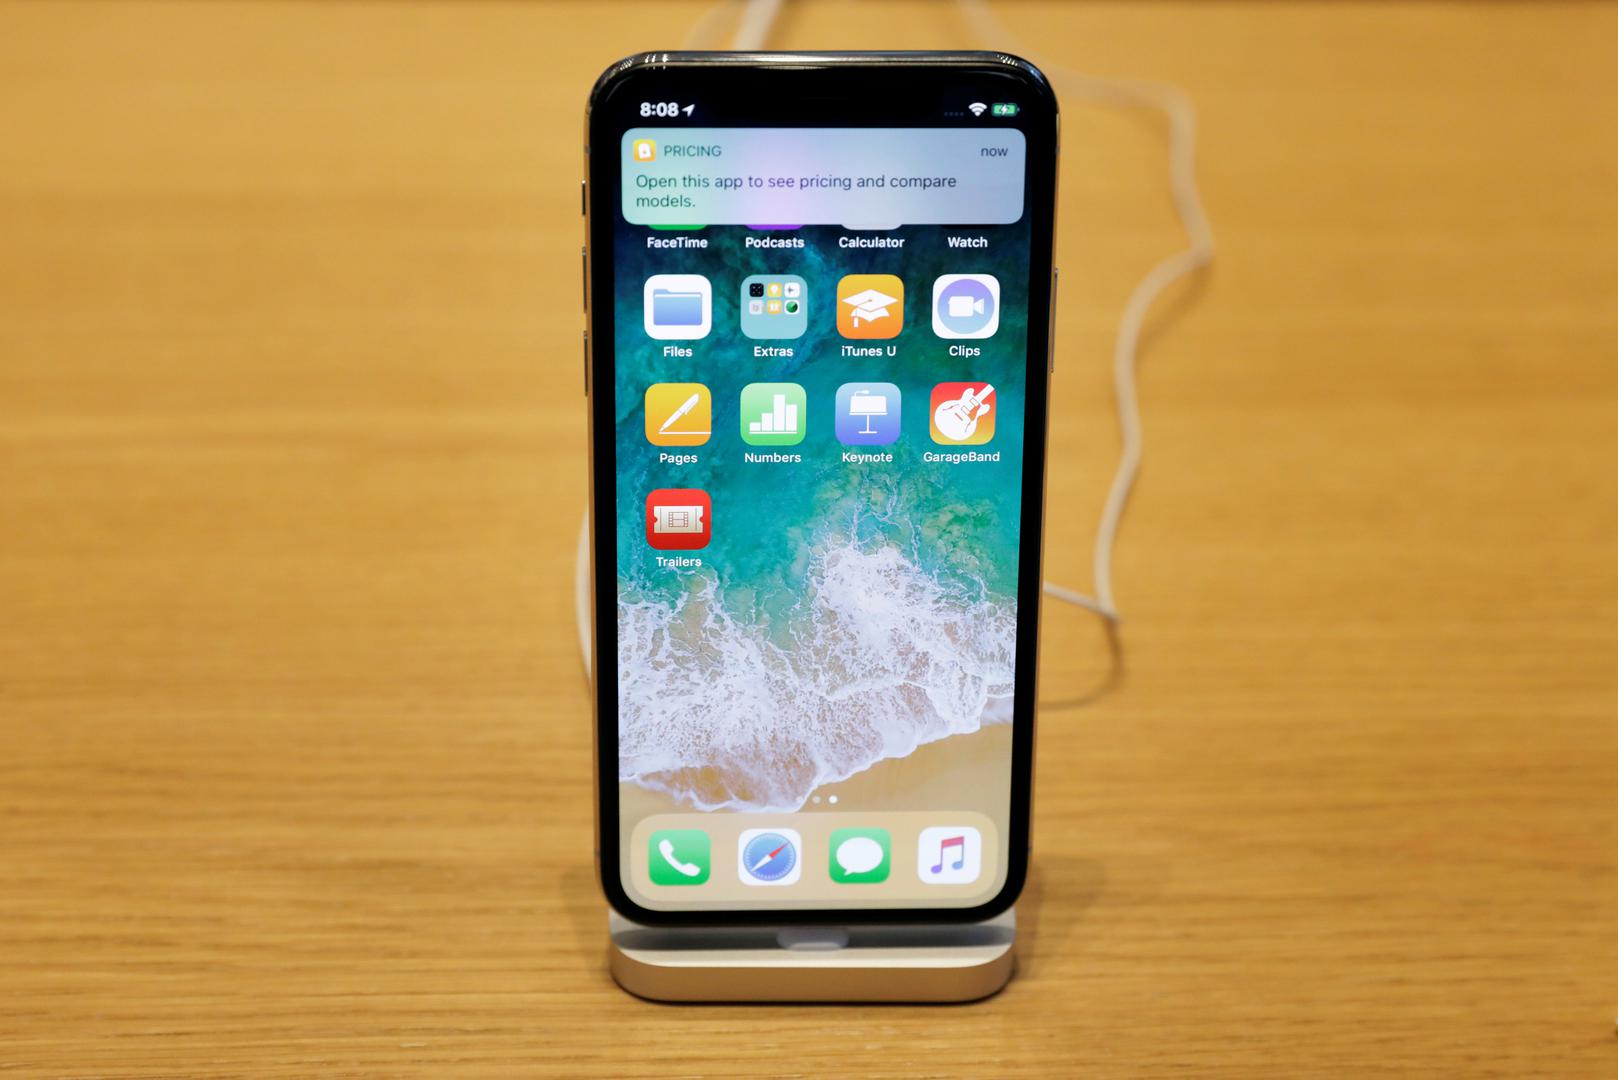 Dizajn - Kombinacija skupih i lomljivih materijala zadaje glavobolju vlasnicima iPhonea. Zbog toga moraju odlučiti hoće li staviti zaštitnu masku i tako 'upropastiti' dizajn koji su skupo platili ili će riskirati moguća oštećenja. To bi moglo postati stvar prošlosti zbog izdržljivih supermaterijala koji bi se mogli koristiti u iPhoneima 2020. godine.

Navode kako Apple ima patent fleksibilnog OLED zaslona koji se da izvući po potrebi iz kućišta na kojem bi se nalazile kamere, zvučnici i mikrofon.

Apple je predao i patent za zaobljeno staklo s virtualni tipkama na stranama mobitela. Tu je i patent koji sugerira kako bi uskoro mogli doći fleksibilni uređaji. To bi ujedno i značilo da će uređaj biti otporniji na udarce.